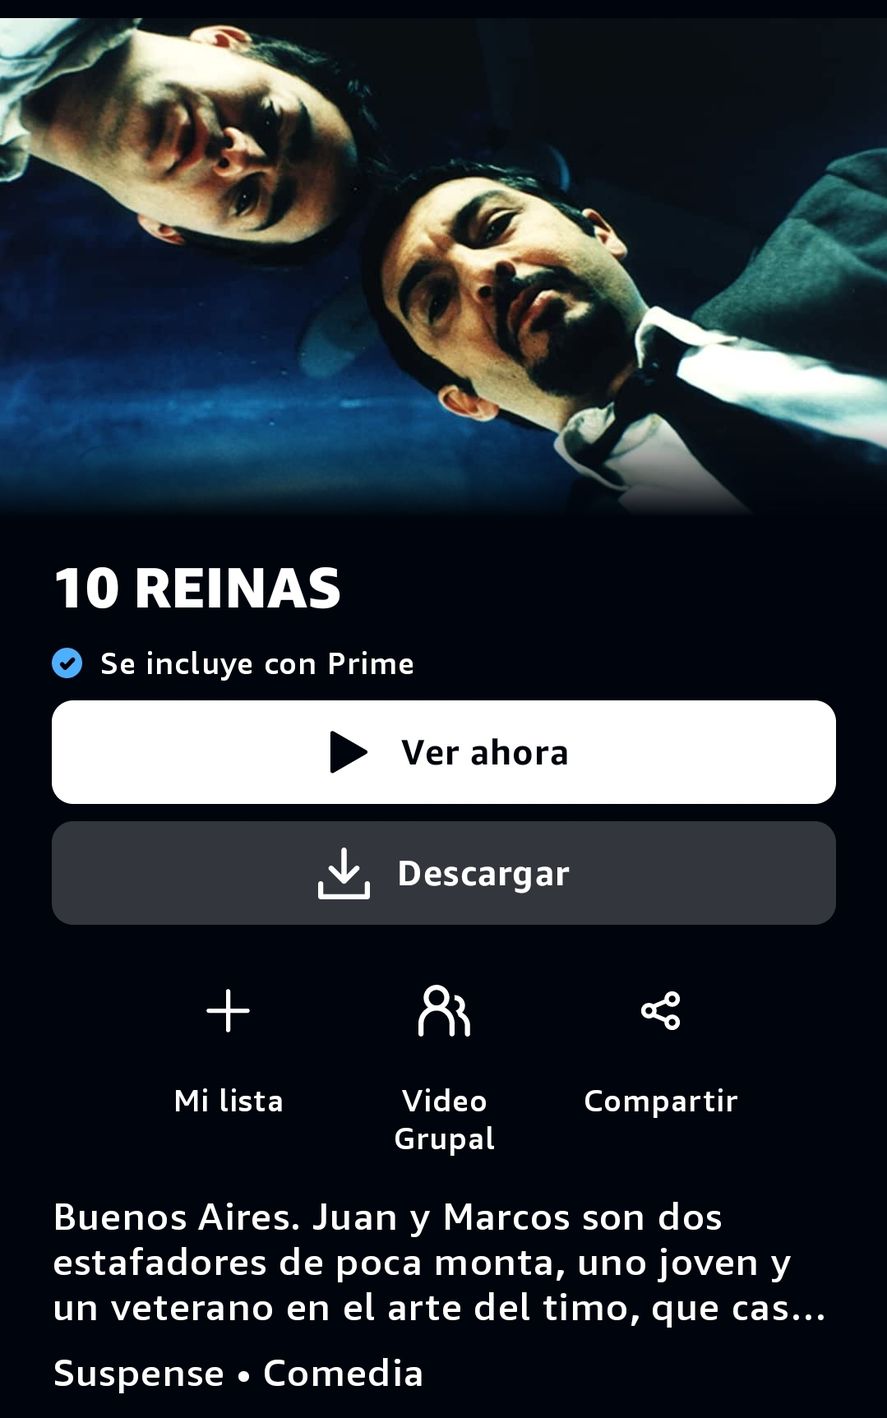 El anuncio de la plataforma de streaming Amazon Prime Video en donde se publicita por error a la película argentina con Ricardo Darín 